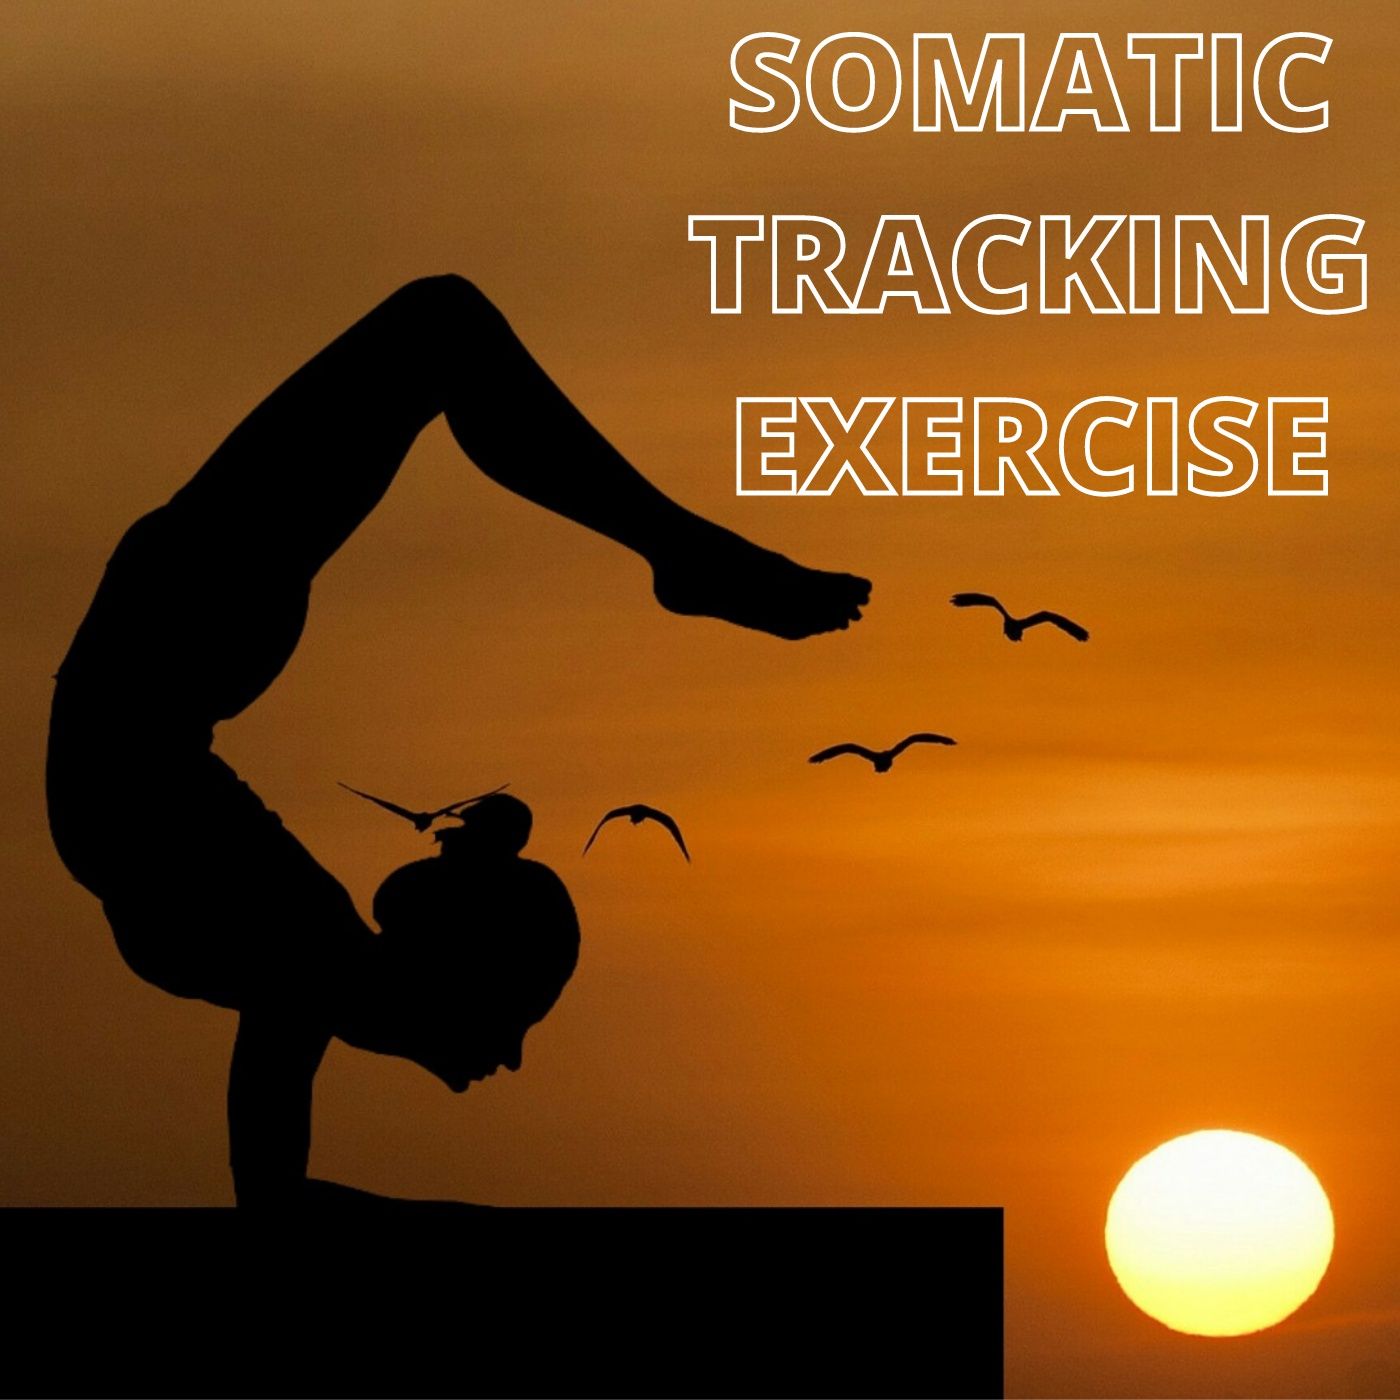 #38 “SOMATIC TRACKING EXERCISE” (hypnotist Jason Newland)